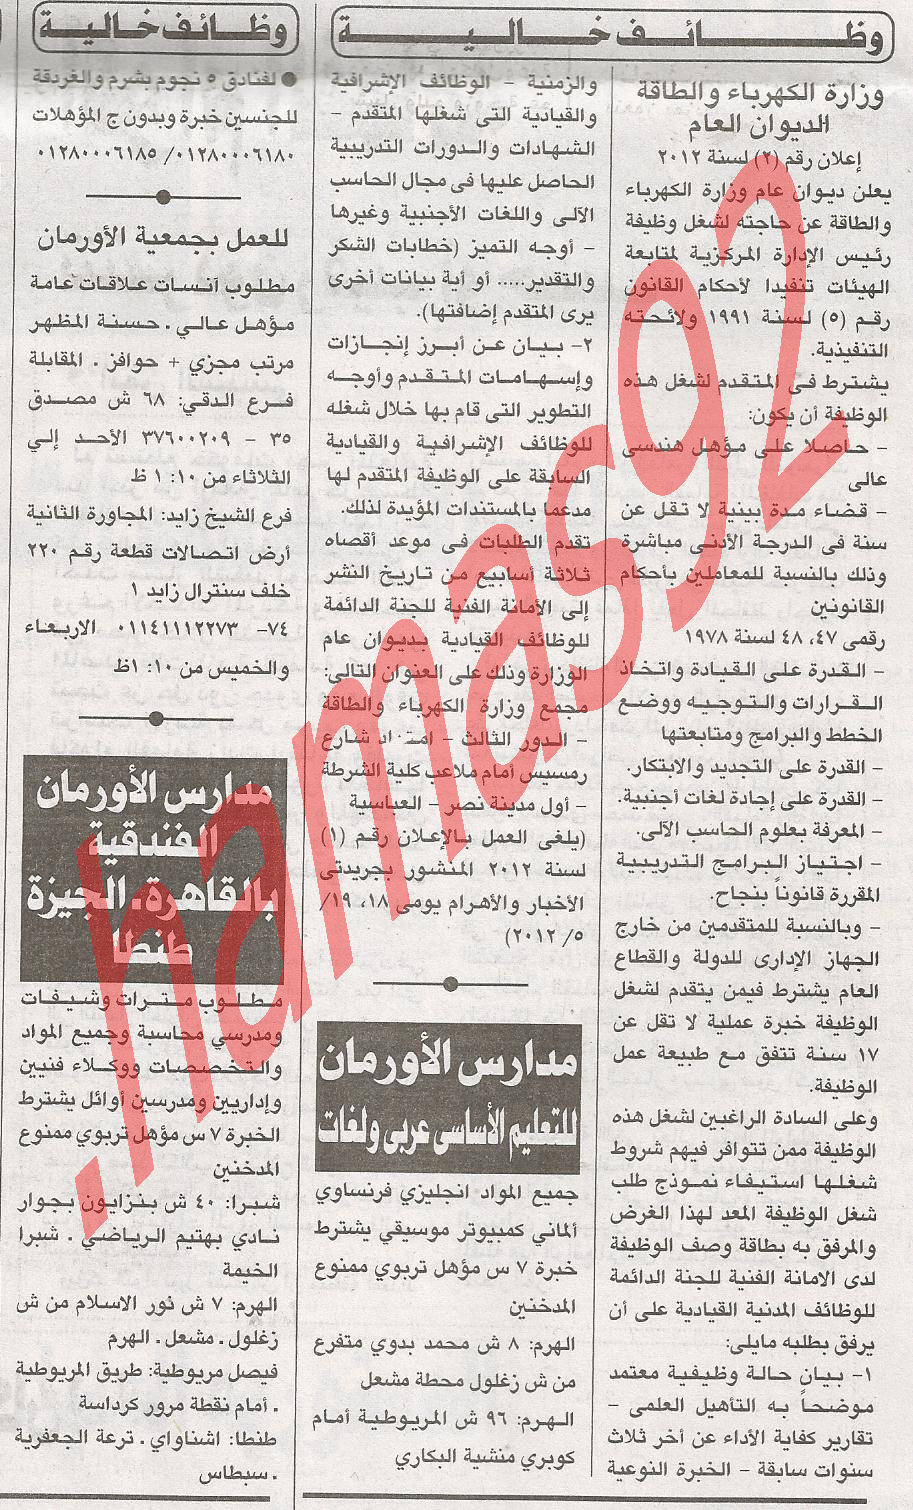 وظائف جريدة الاهرام السبت 30/6/2012 - وظائف مصر  %D8%A7%D9%84%D8%A7%D9%87%D8%B1%D8%A7%D9%85+1